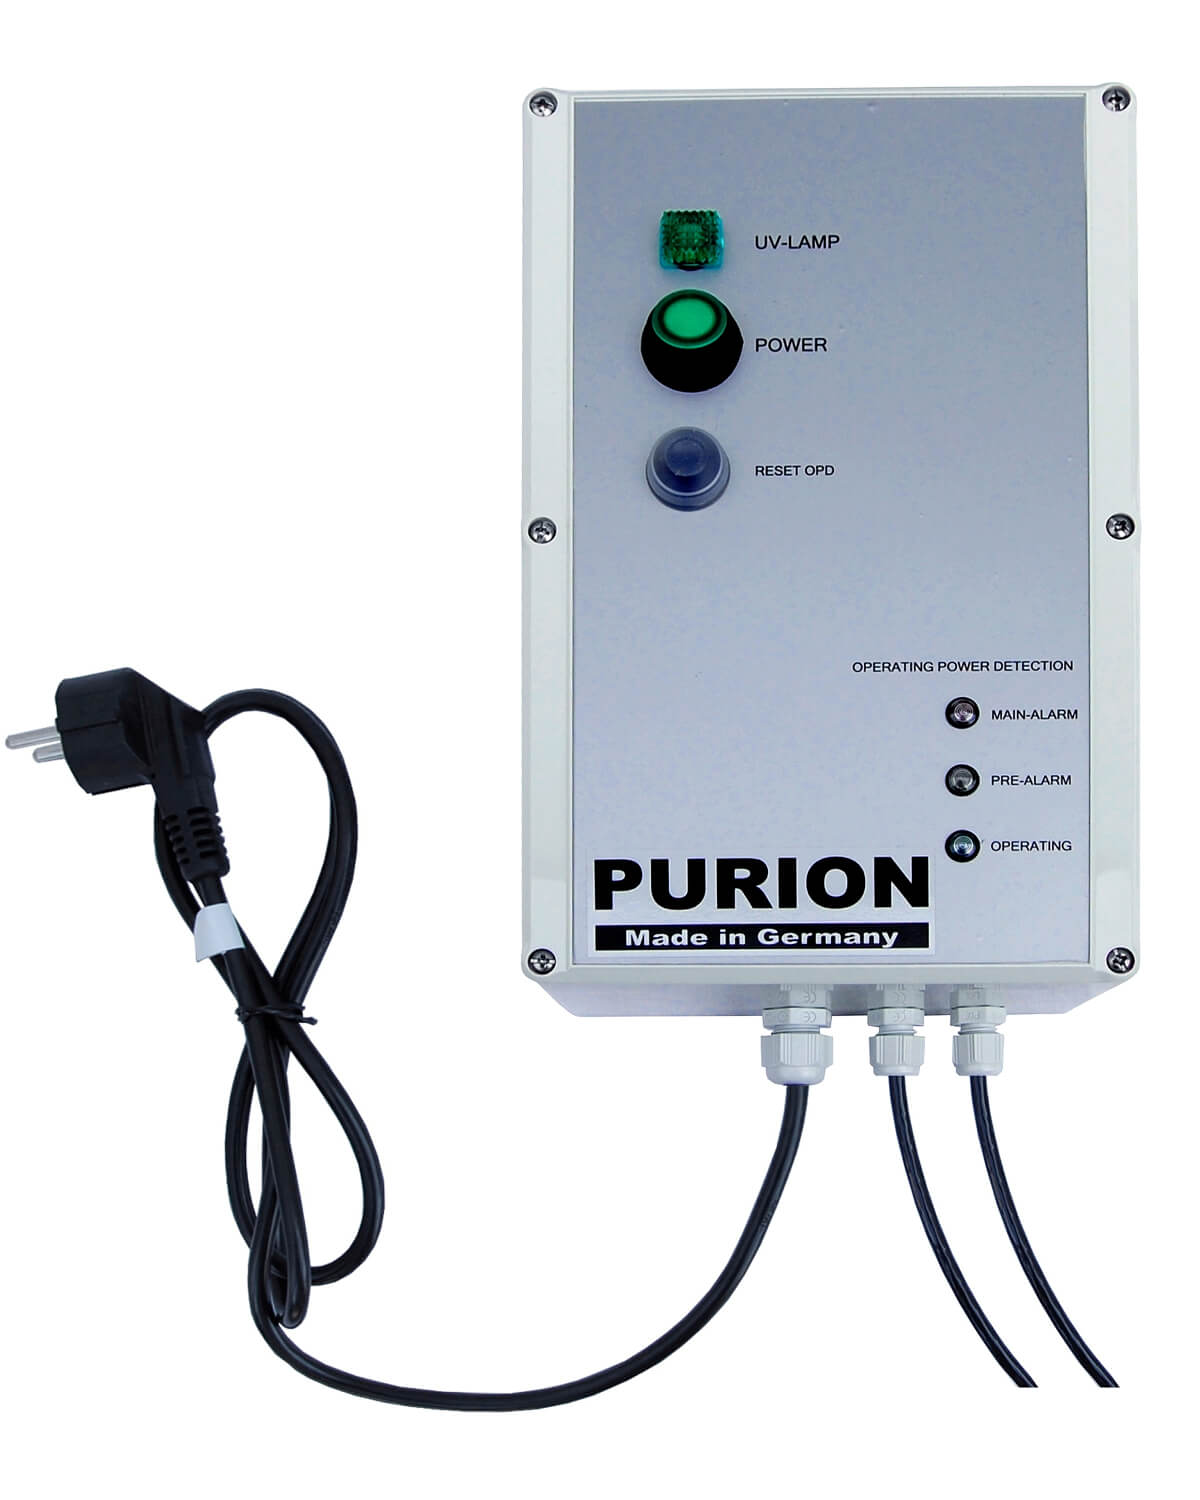 Das PURION 2500 36 W 110 - 240 V AC OPD der Purion GmbH ist ein leistungsstarkes UV-C-Desinfektionssystem, das die Qualität und Reinheit von Trinkwasser gewährleistet. Das Modell PURION 2500 36W bietet eine effektive Wasserreinigung